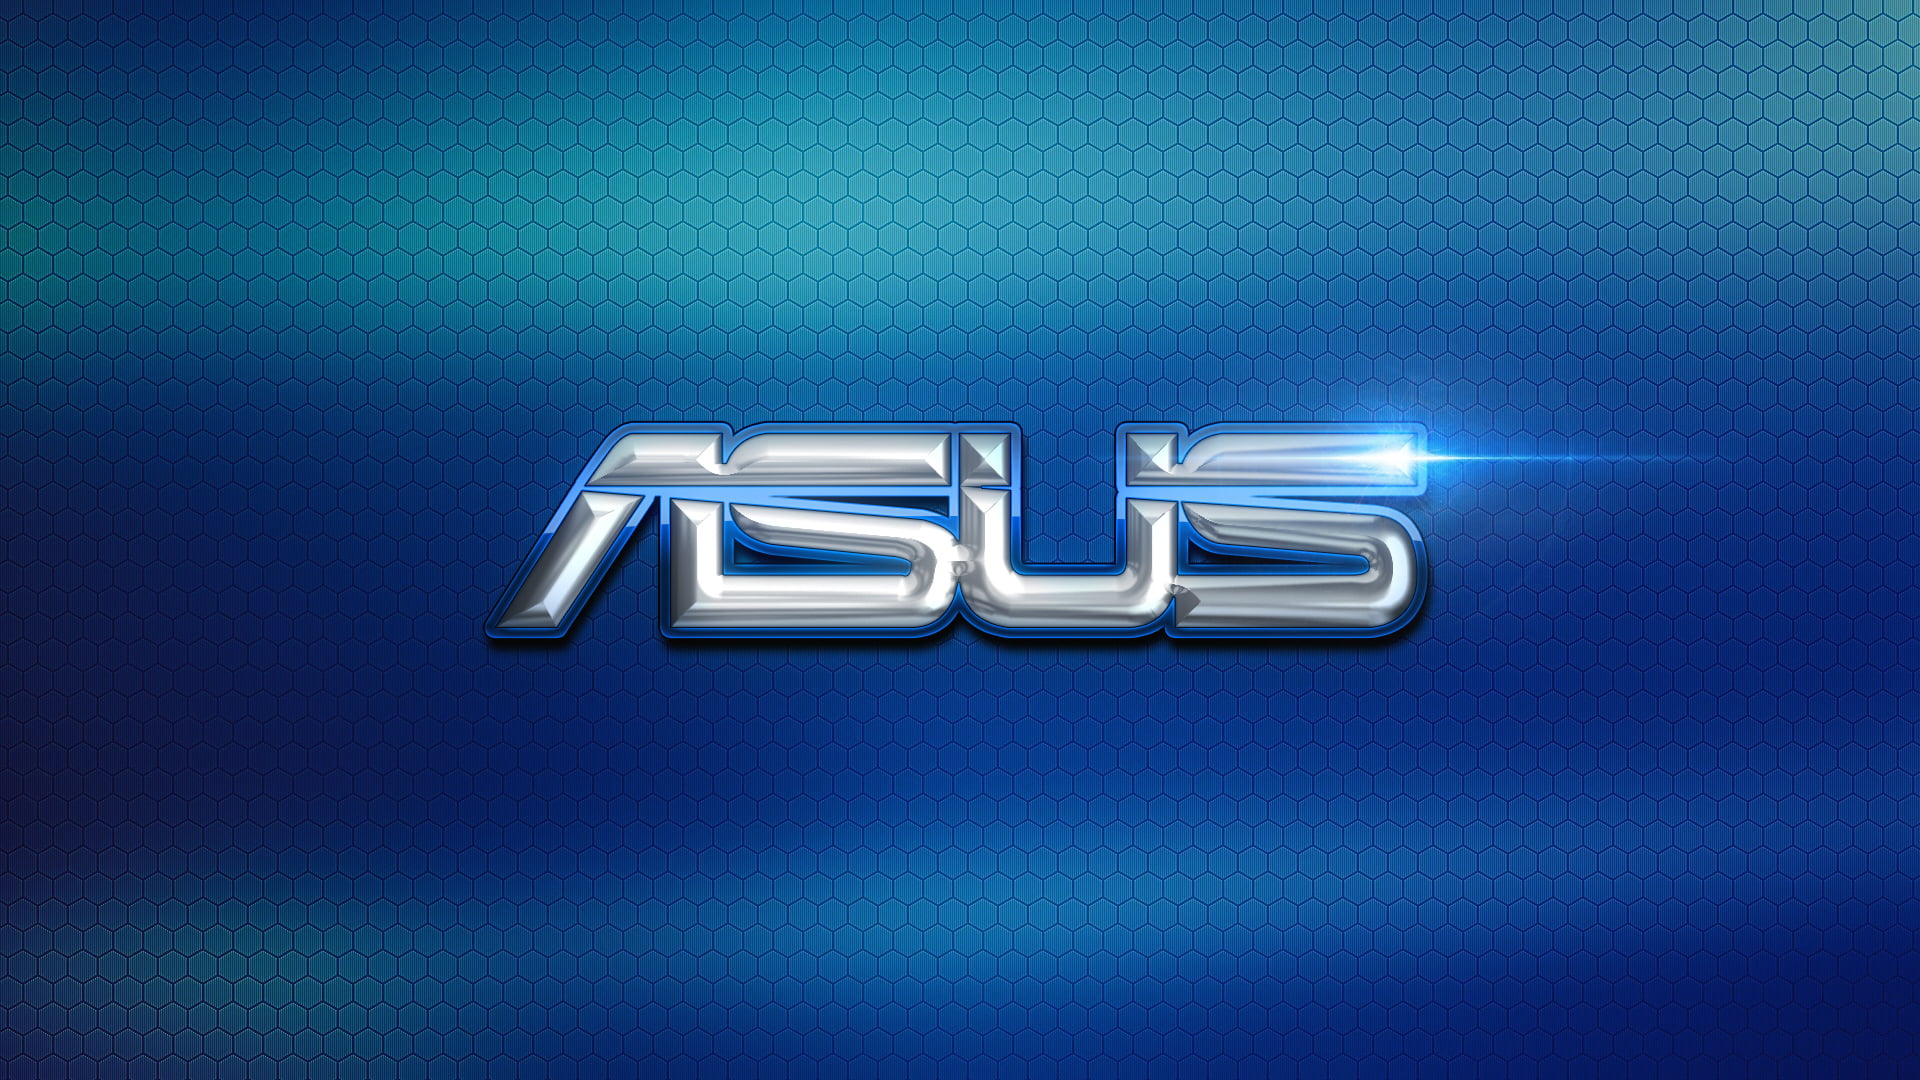 Asus logo, computer, Wallpaper, texture, hi-tech, shiny, illustration